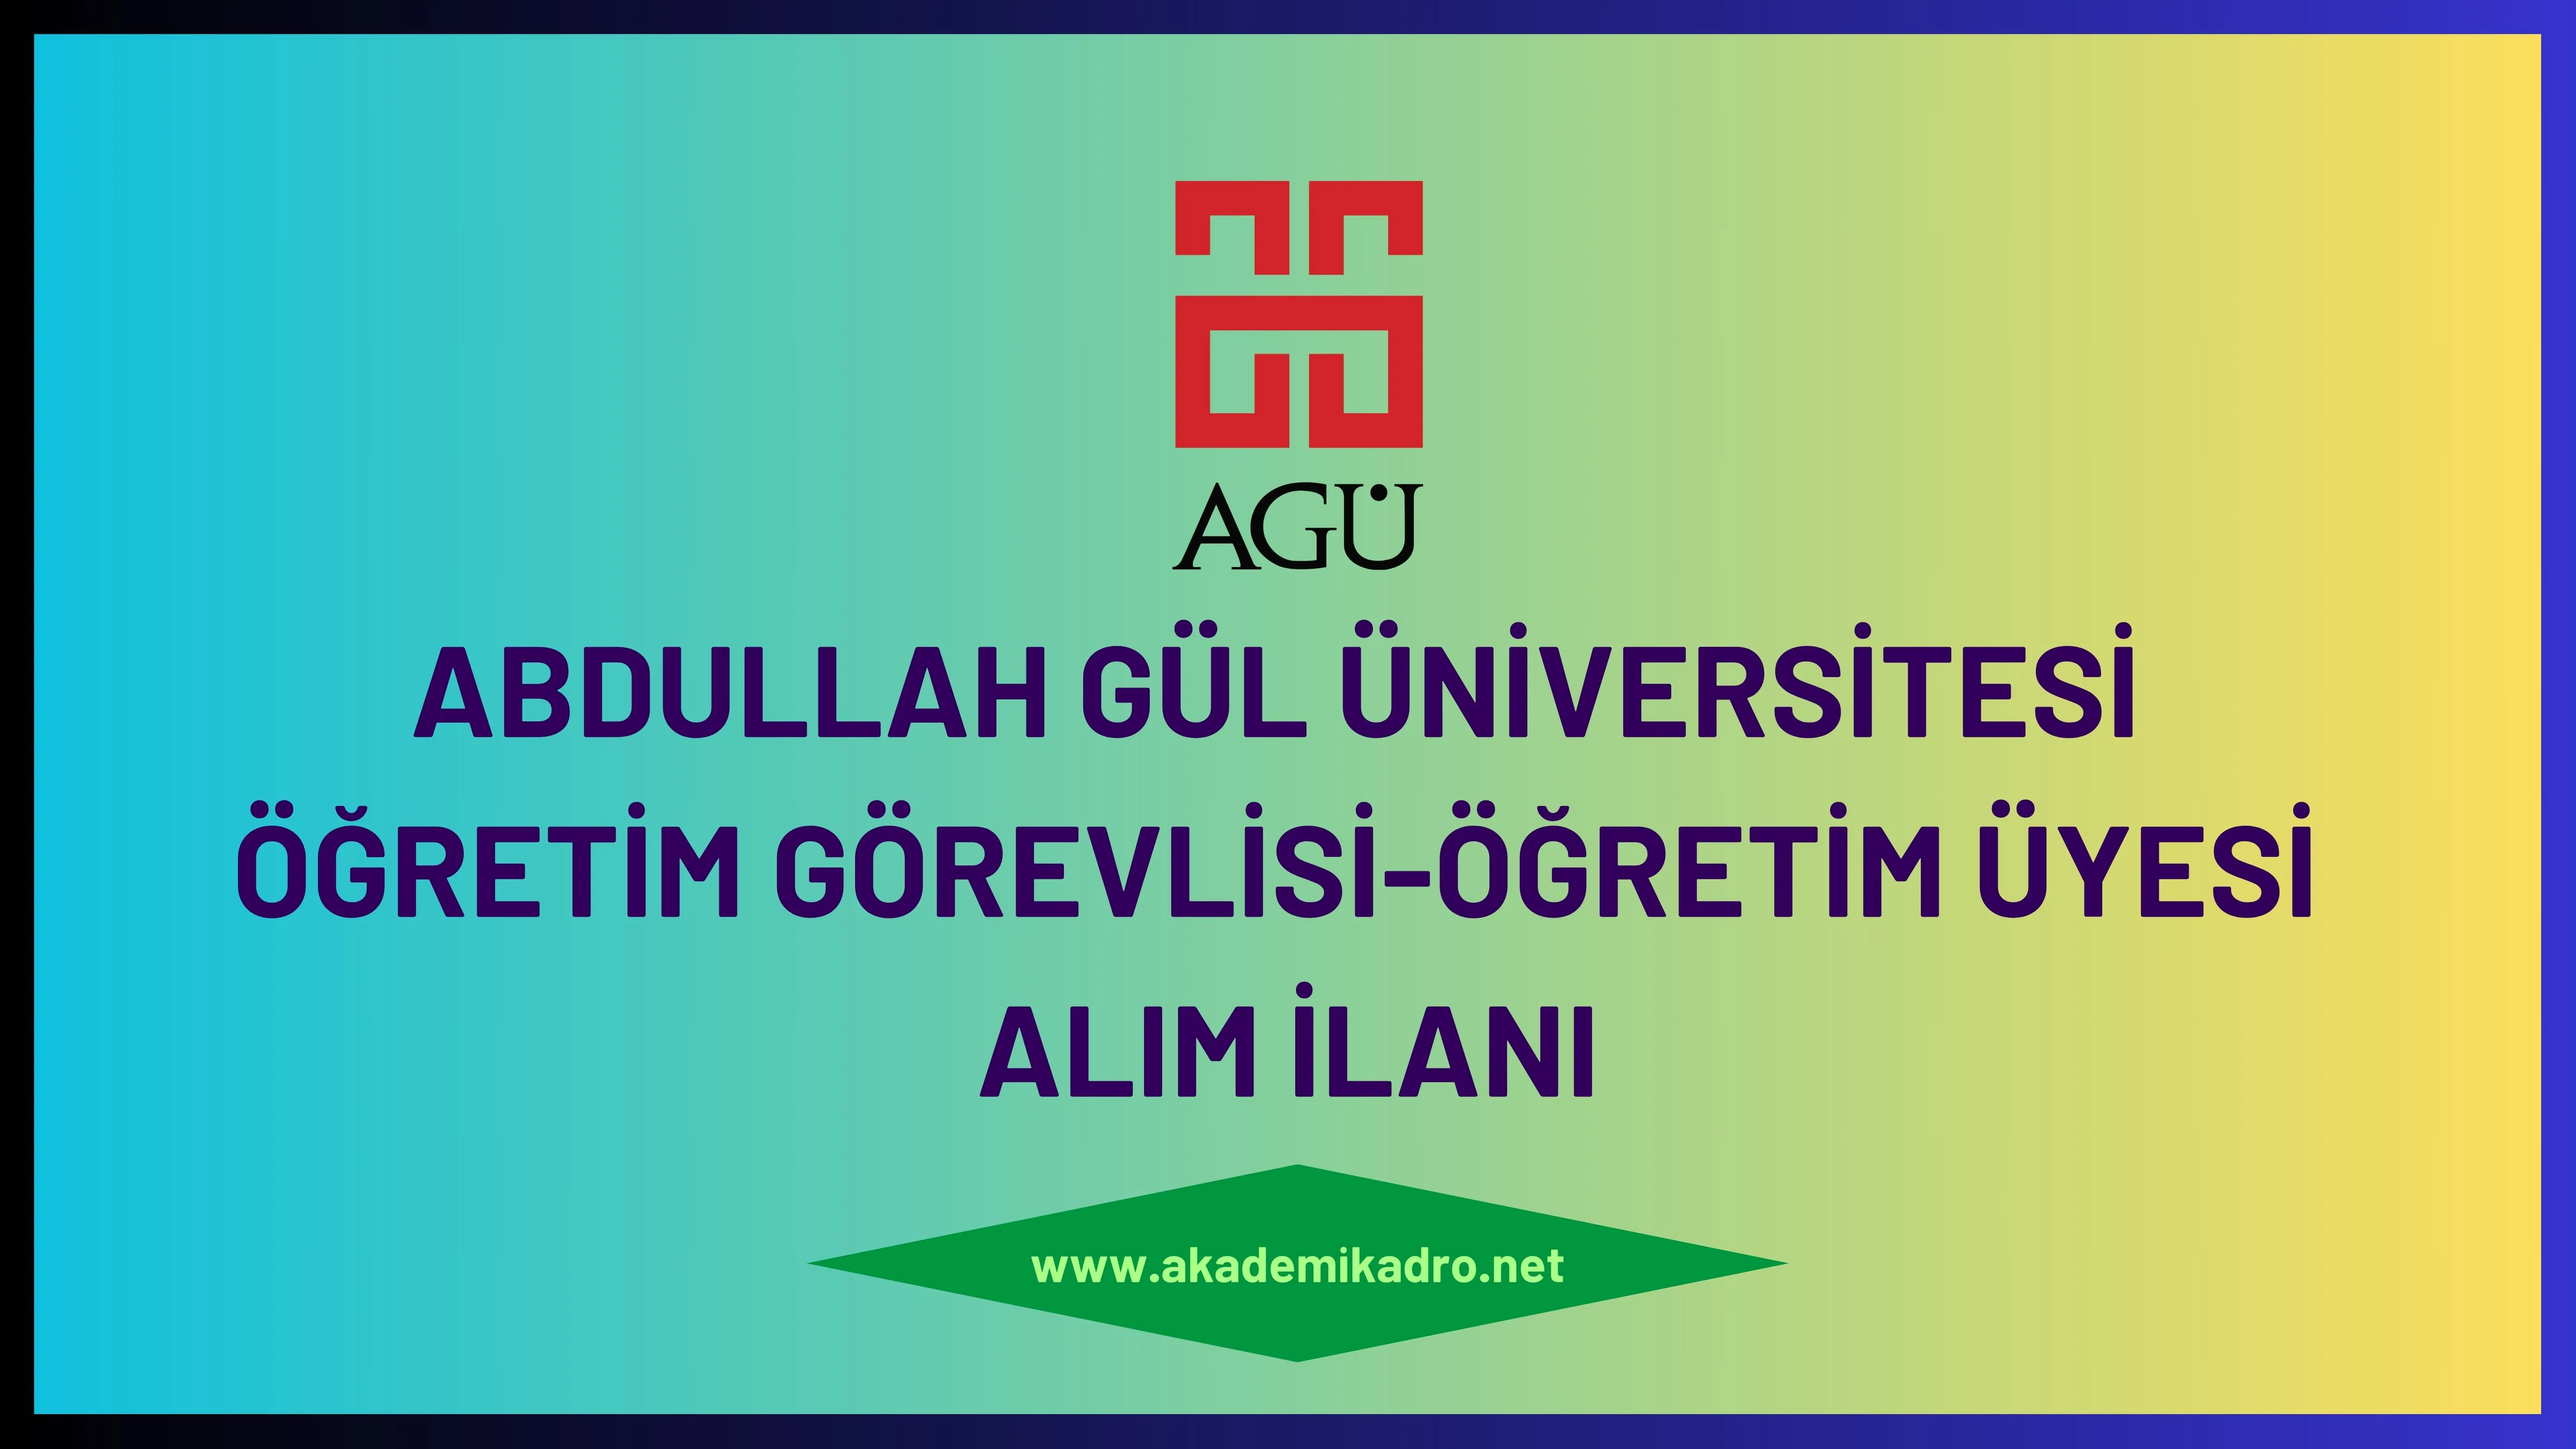 Abdullah Gül Üniversitesi2 Öğretim görevlisi ve 2 Öğretim üyesi alacak.